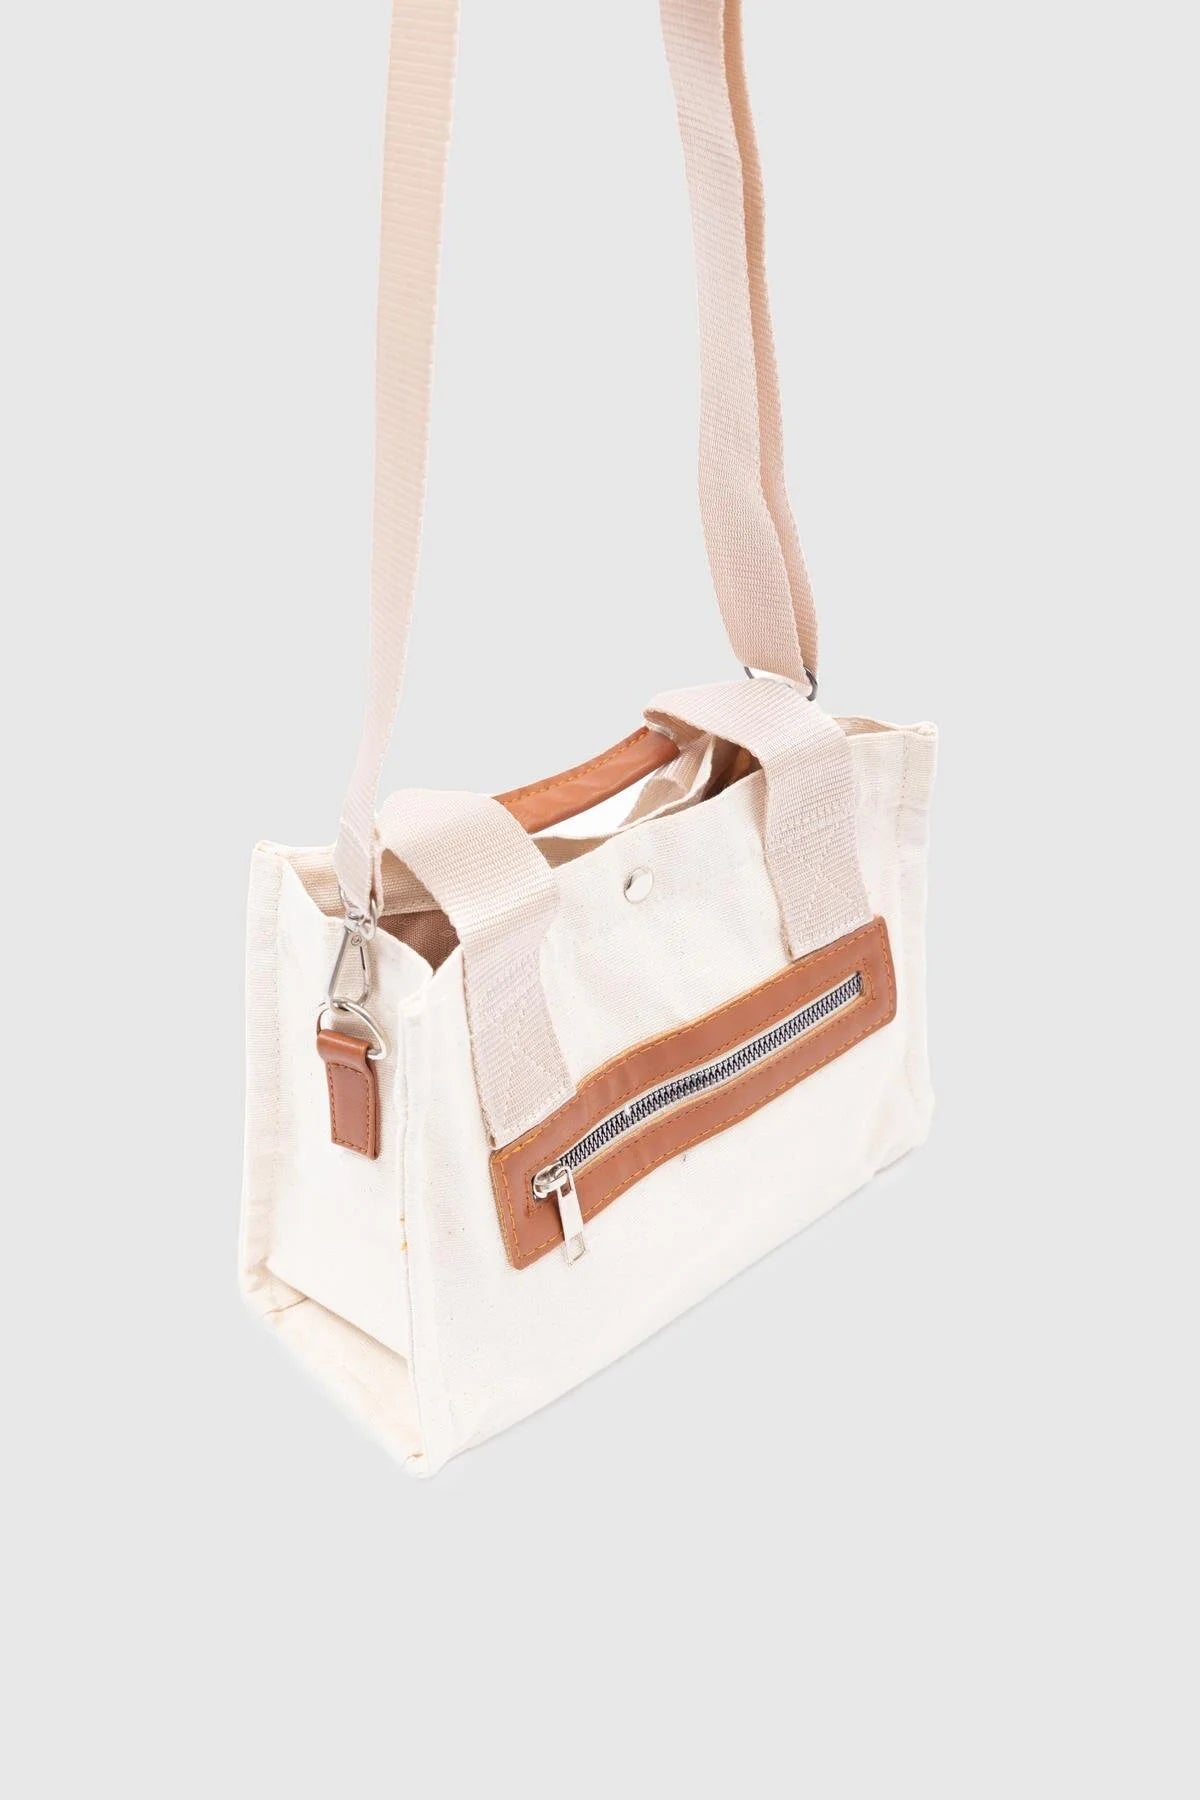 Canvas Fabric Cream Crossbody Bag crossbody bag LUNARITY GARAGE   